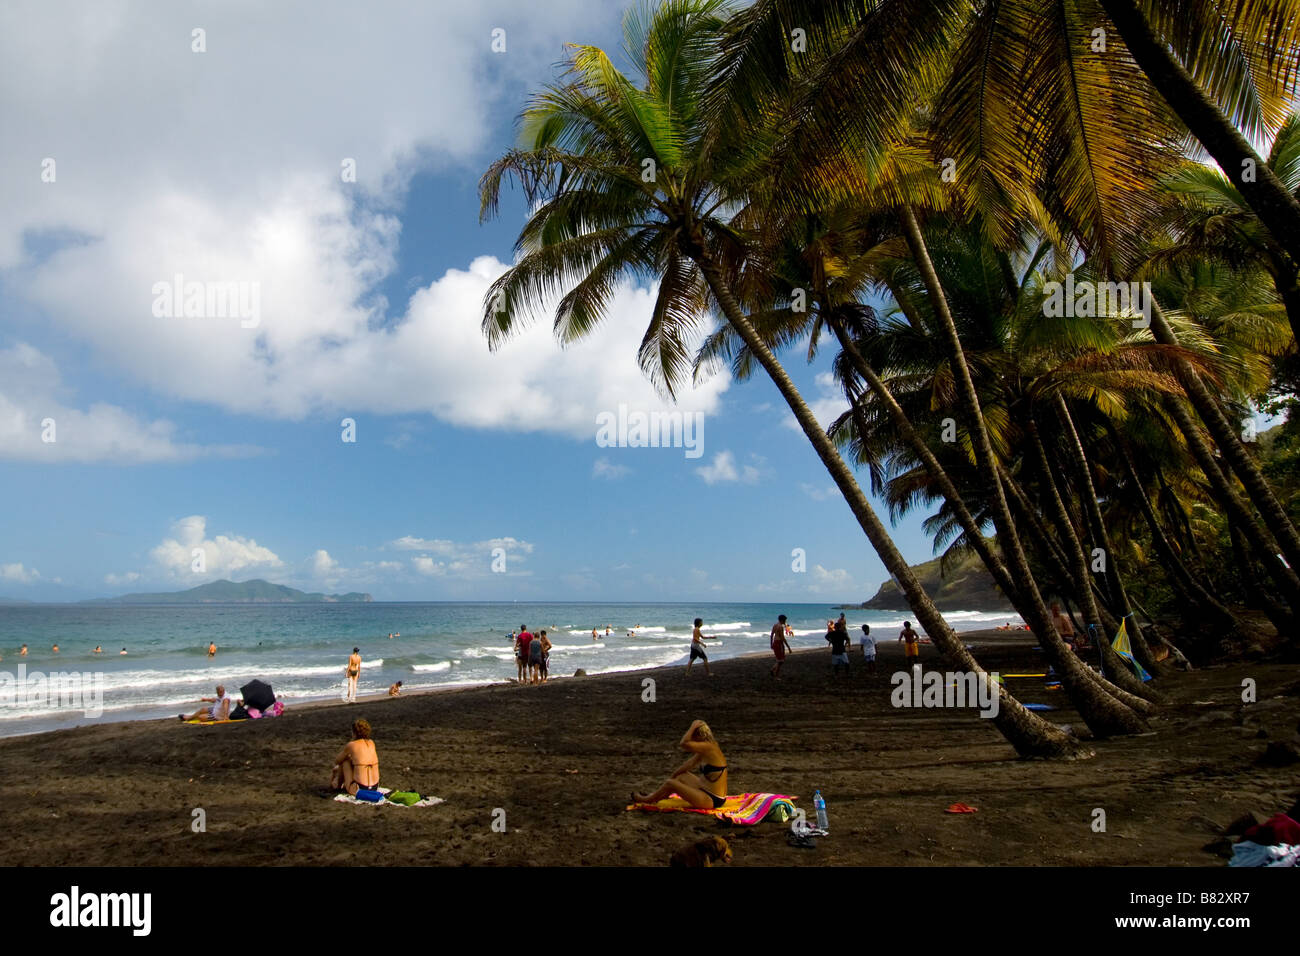 Nicaragua, playa negra arena volcánica, palmeras, el paraíso, la gente en la playa Foto de stock